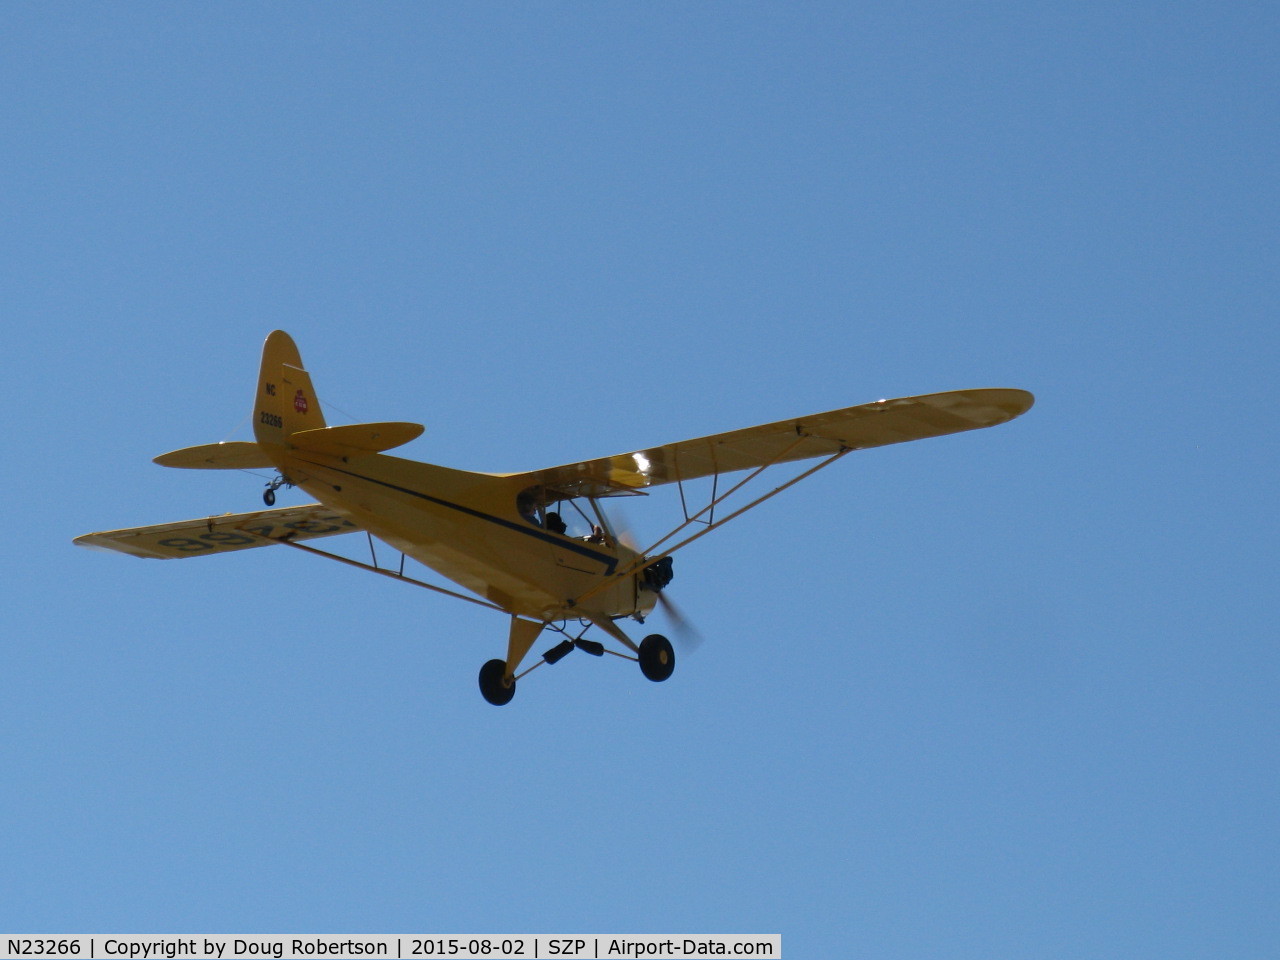 N23266, 1939 Piper J3C-65 Cub Cub C/N 3113, 1939 Piper J3C-65 CUB, Continental A&C65 65 Hp, another takeoff climb